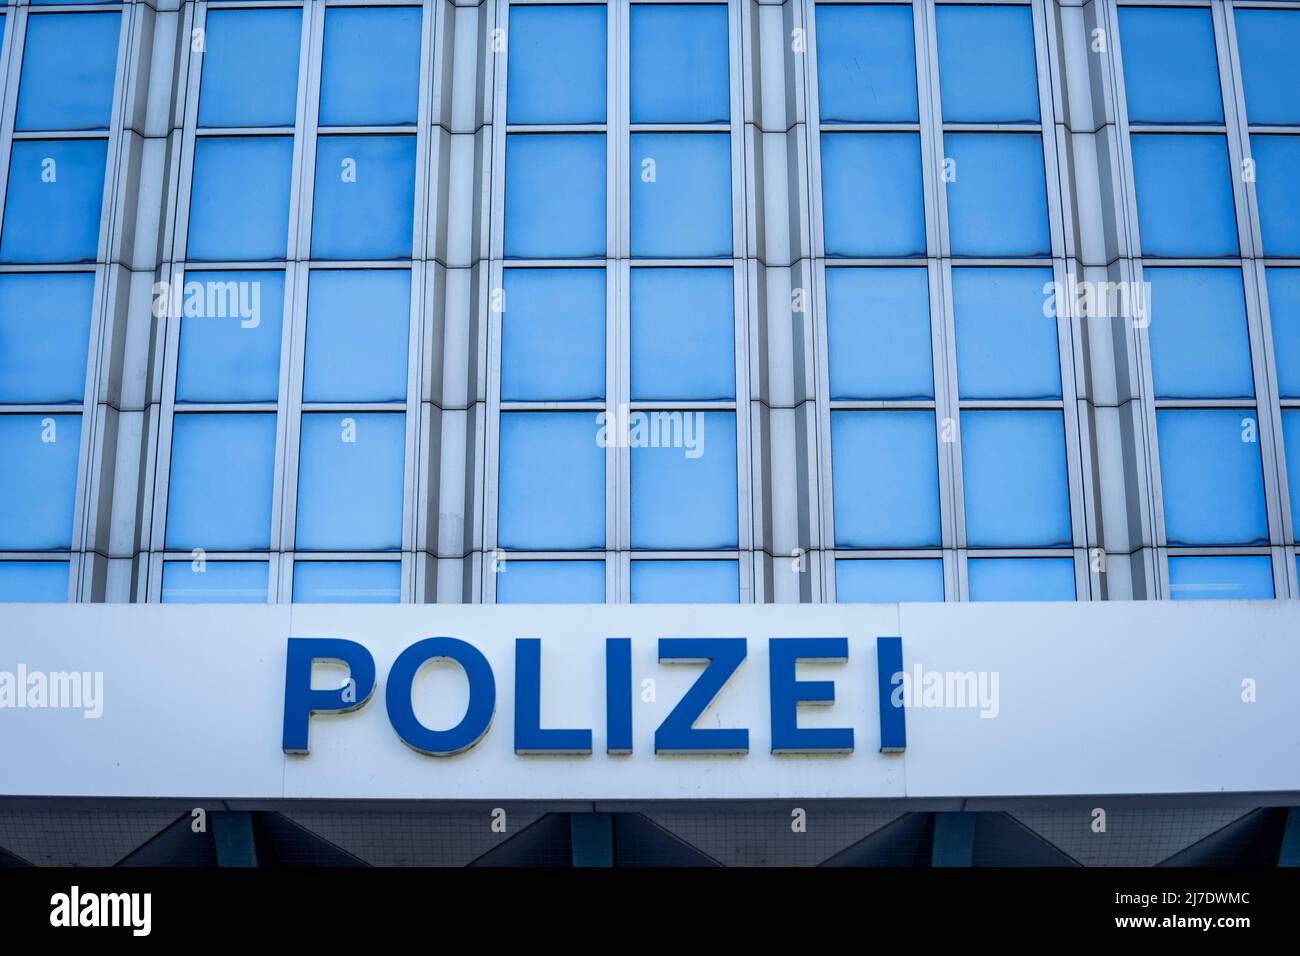 Polizia, costruzione di un'immagine simbolica dell'autorità di polizia, Foto Stock